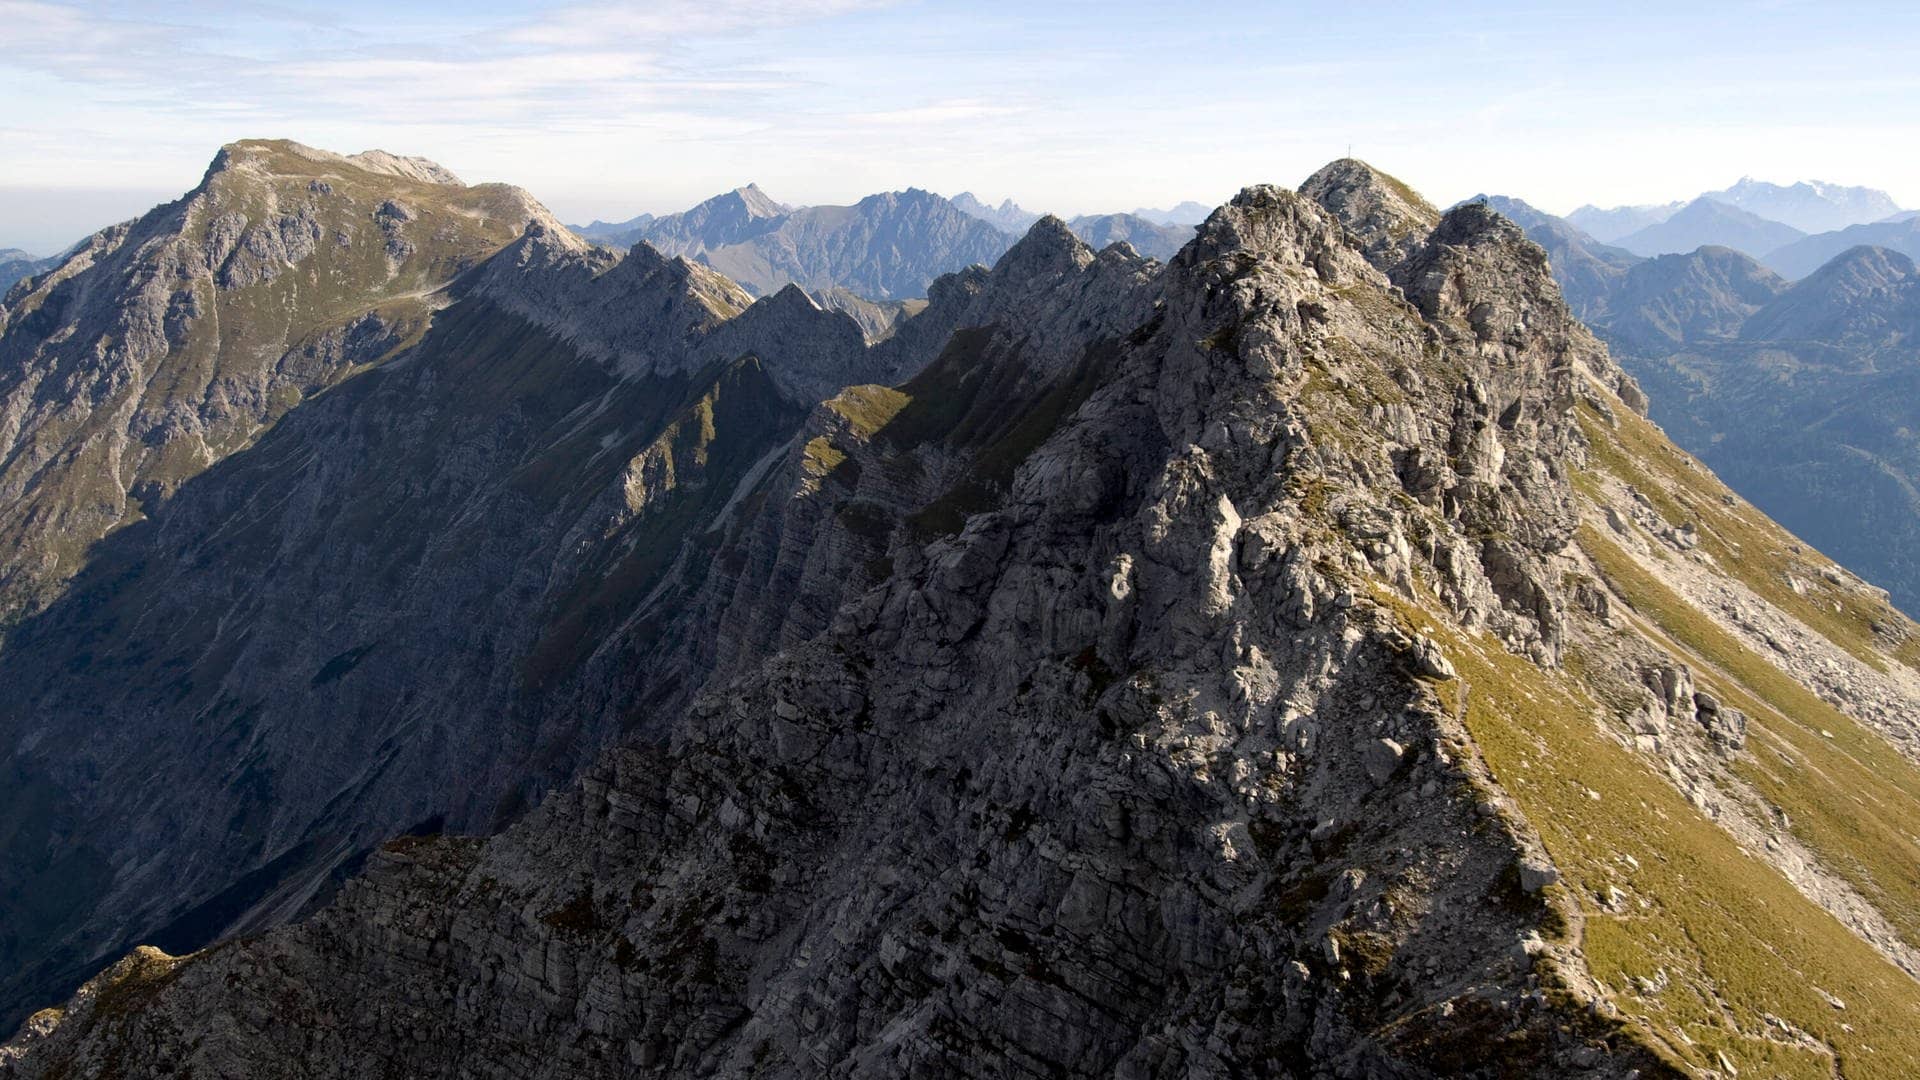 Mindelheimer Klettersteig in den Allgäuer Alpen. (Foto: IMAGO, IMAGO / Shotshop)